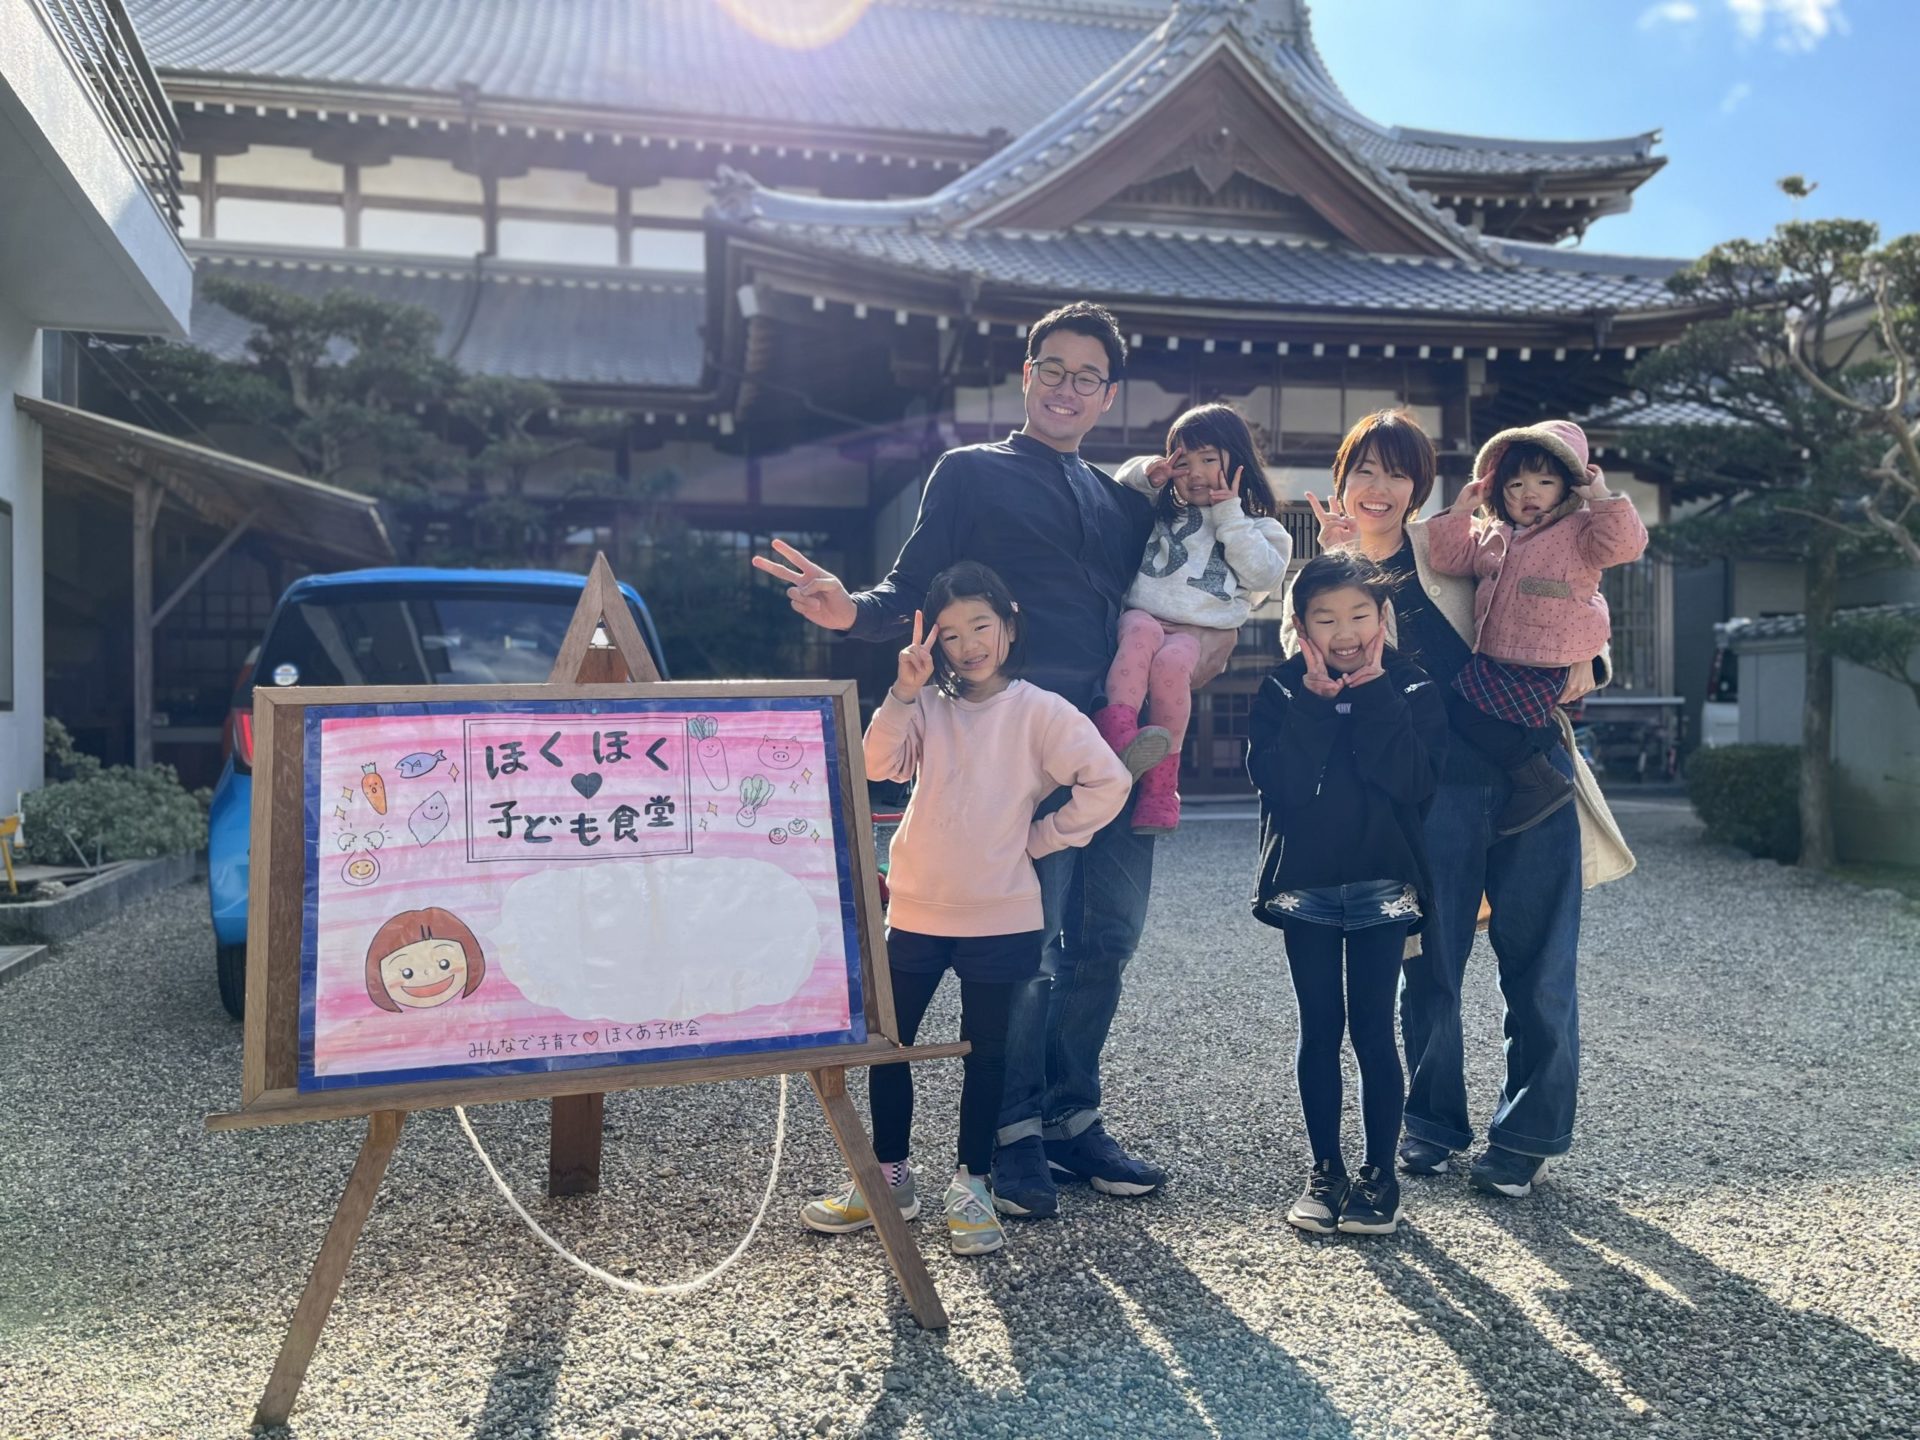 ほくほく子ども食堂運営者の石川さんご家族の写真。みんないい笑顔。